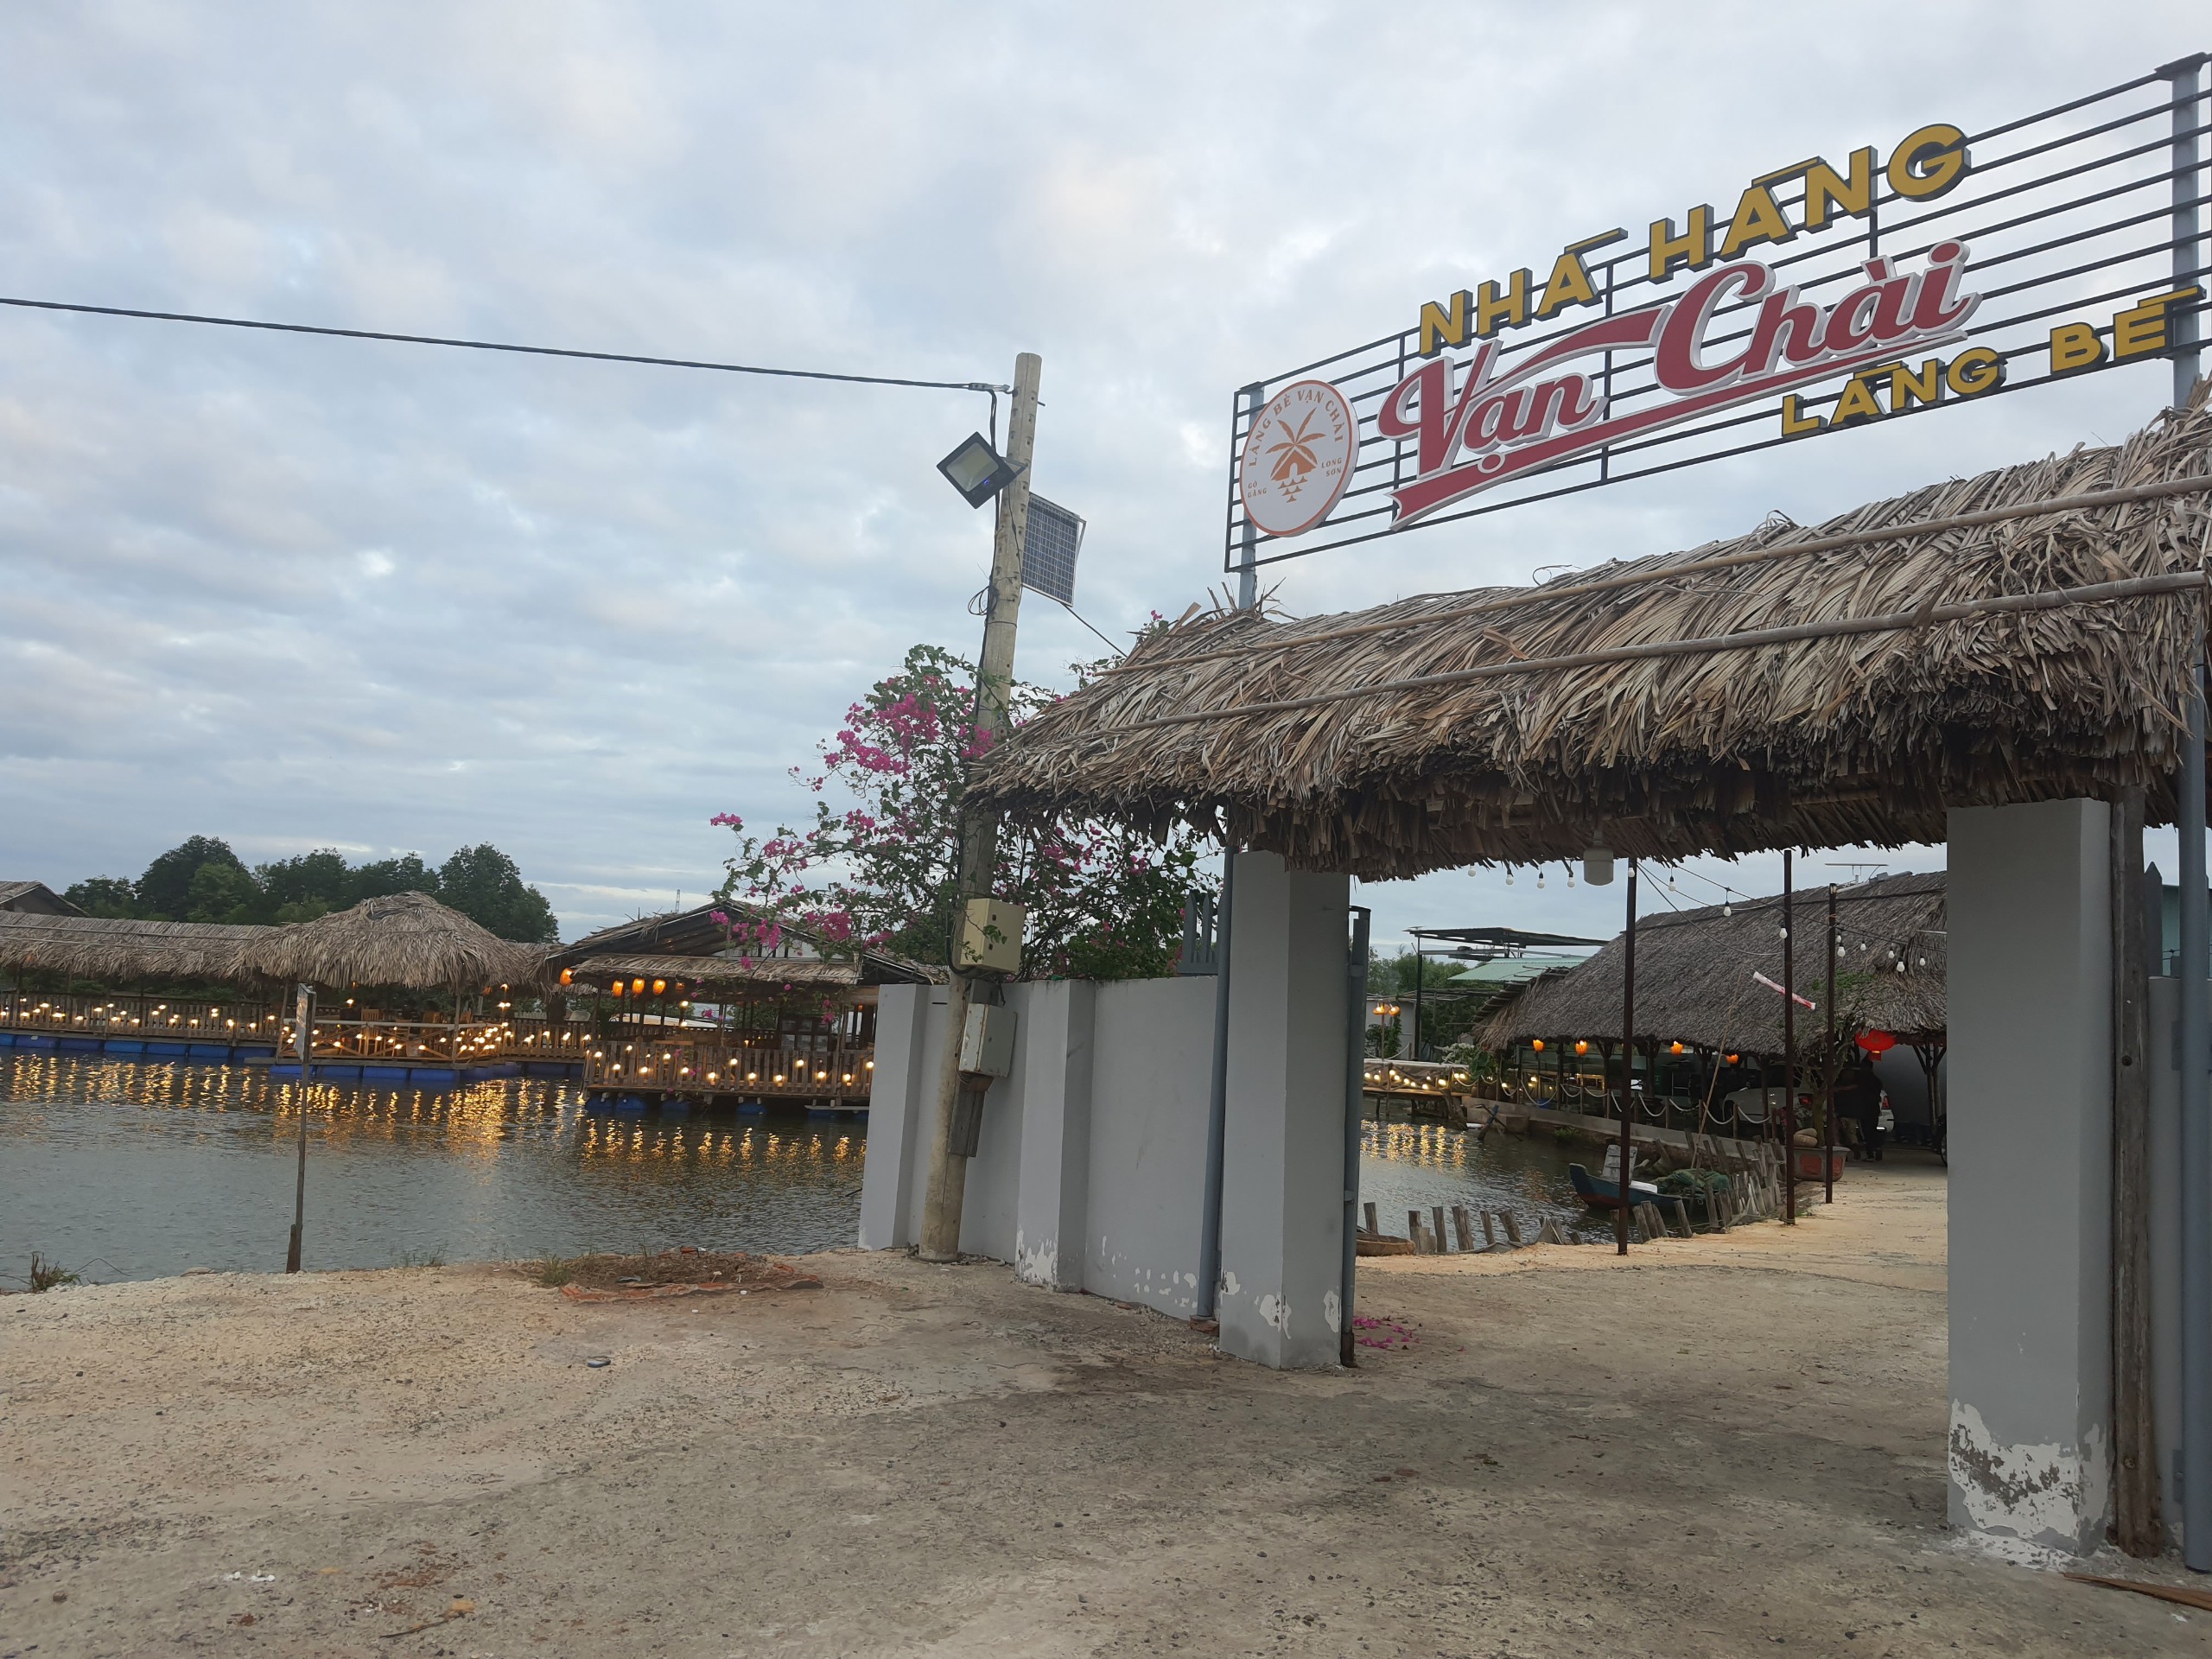 Nhà hàng Vạn Chài - Địa điểm ẩm thực ven biển lý tưởng khi đến Vũng Tàu  